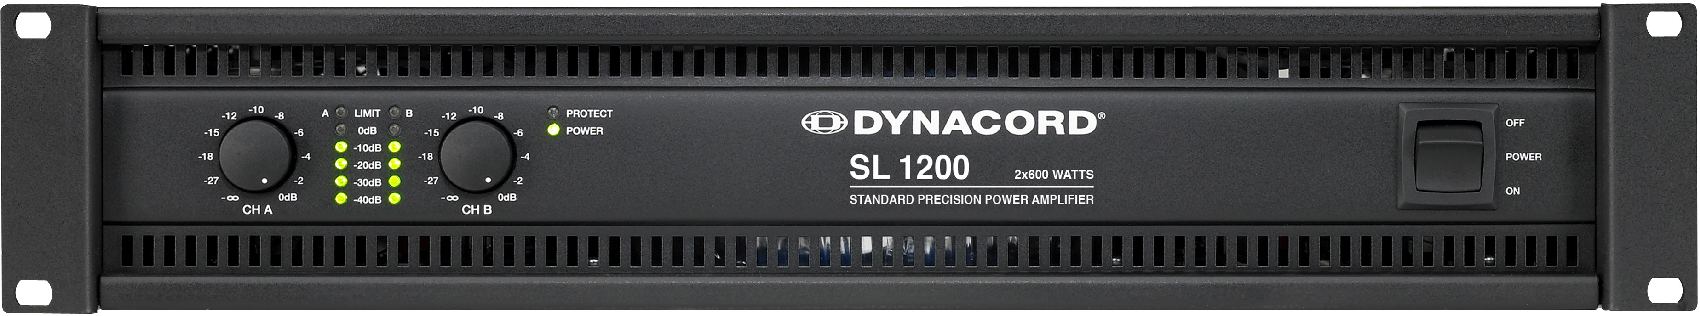 DYNACORD SL 1200